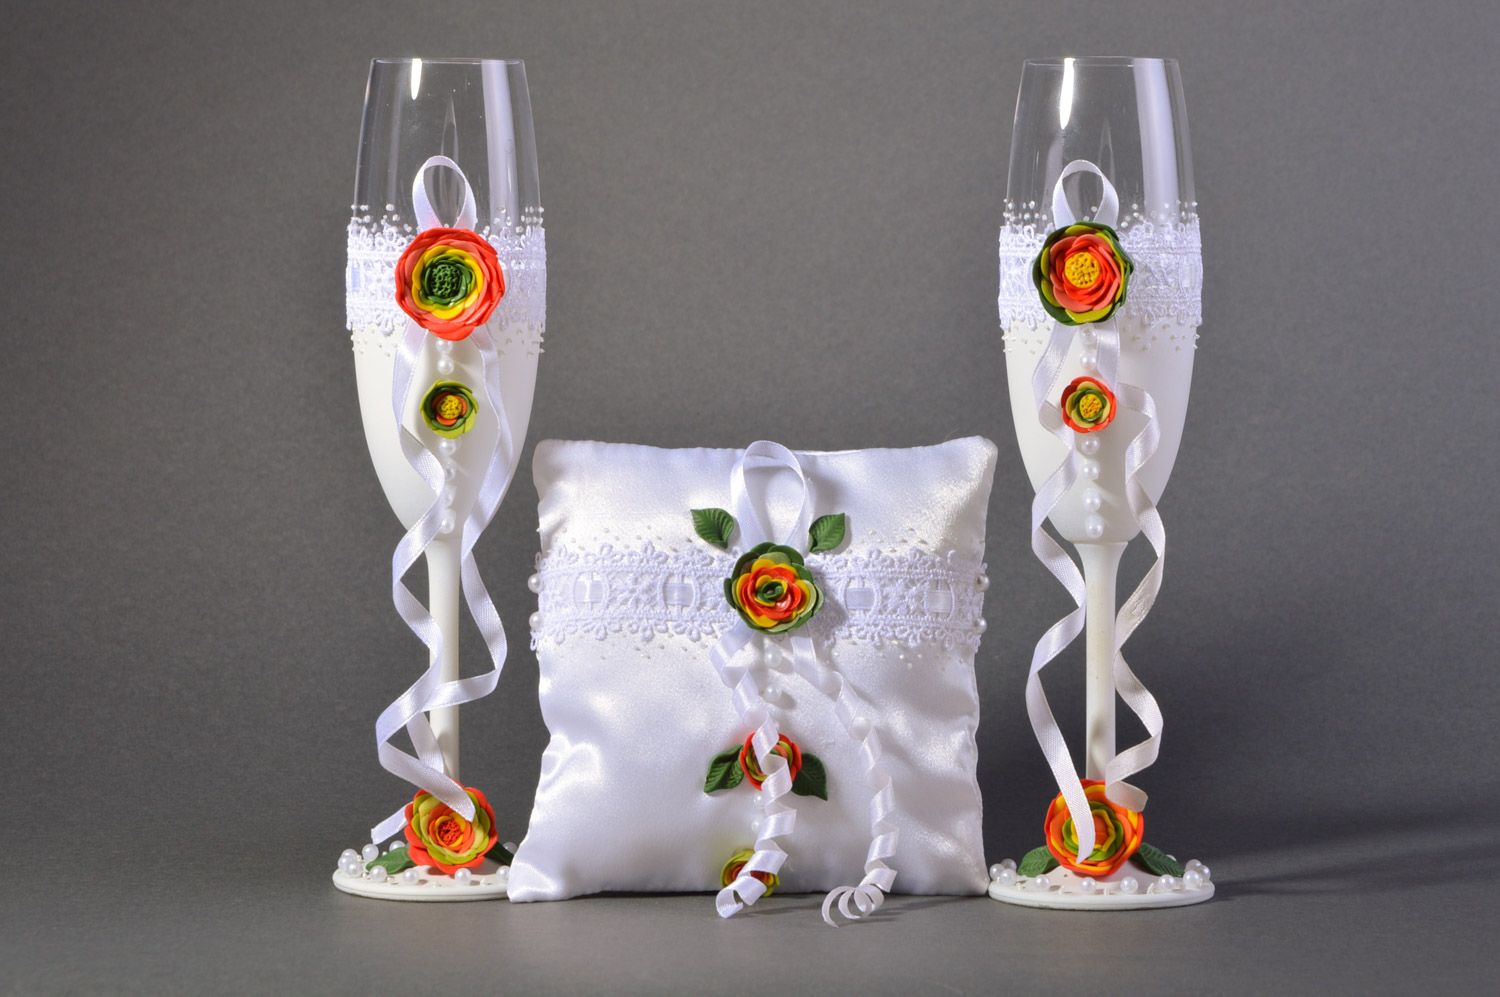 Set de accesorios de boda dos copas y cojín para anillos blancos artesanales foto 2